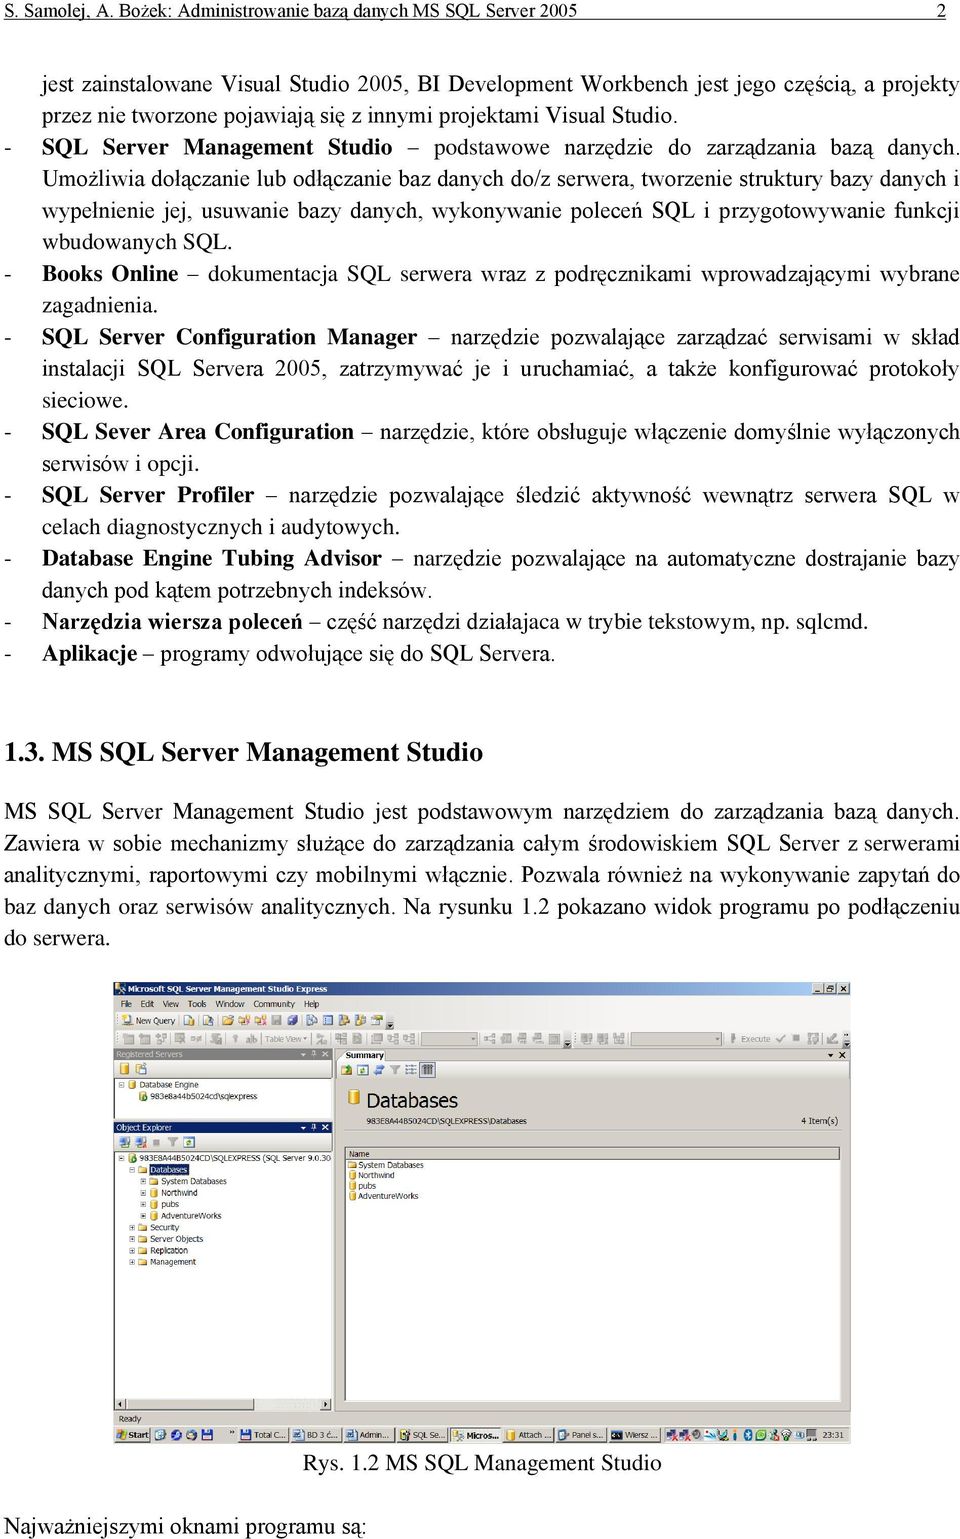 projektami Visual Studio. - SQL Server Management Studio podstawowe narzędzie do zarządzania bazą danych.